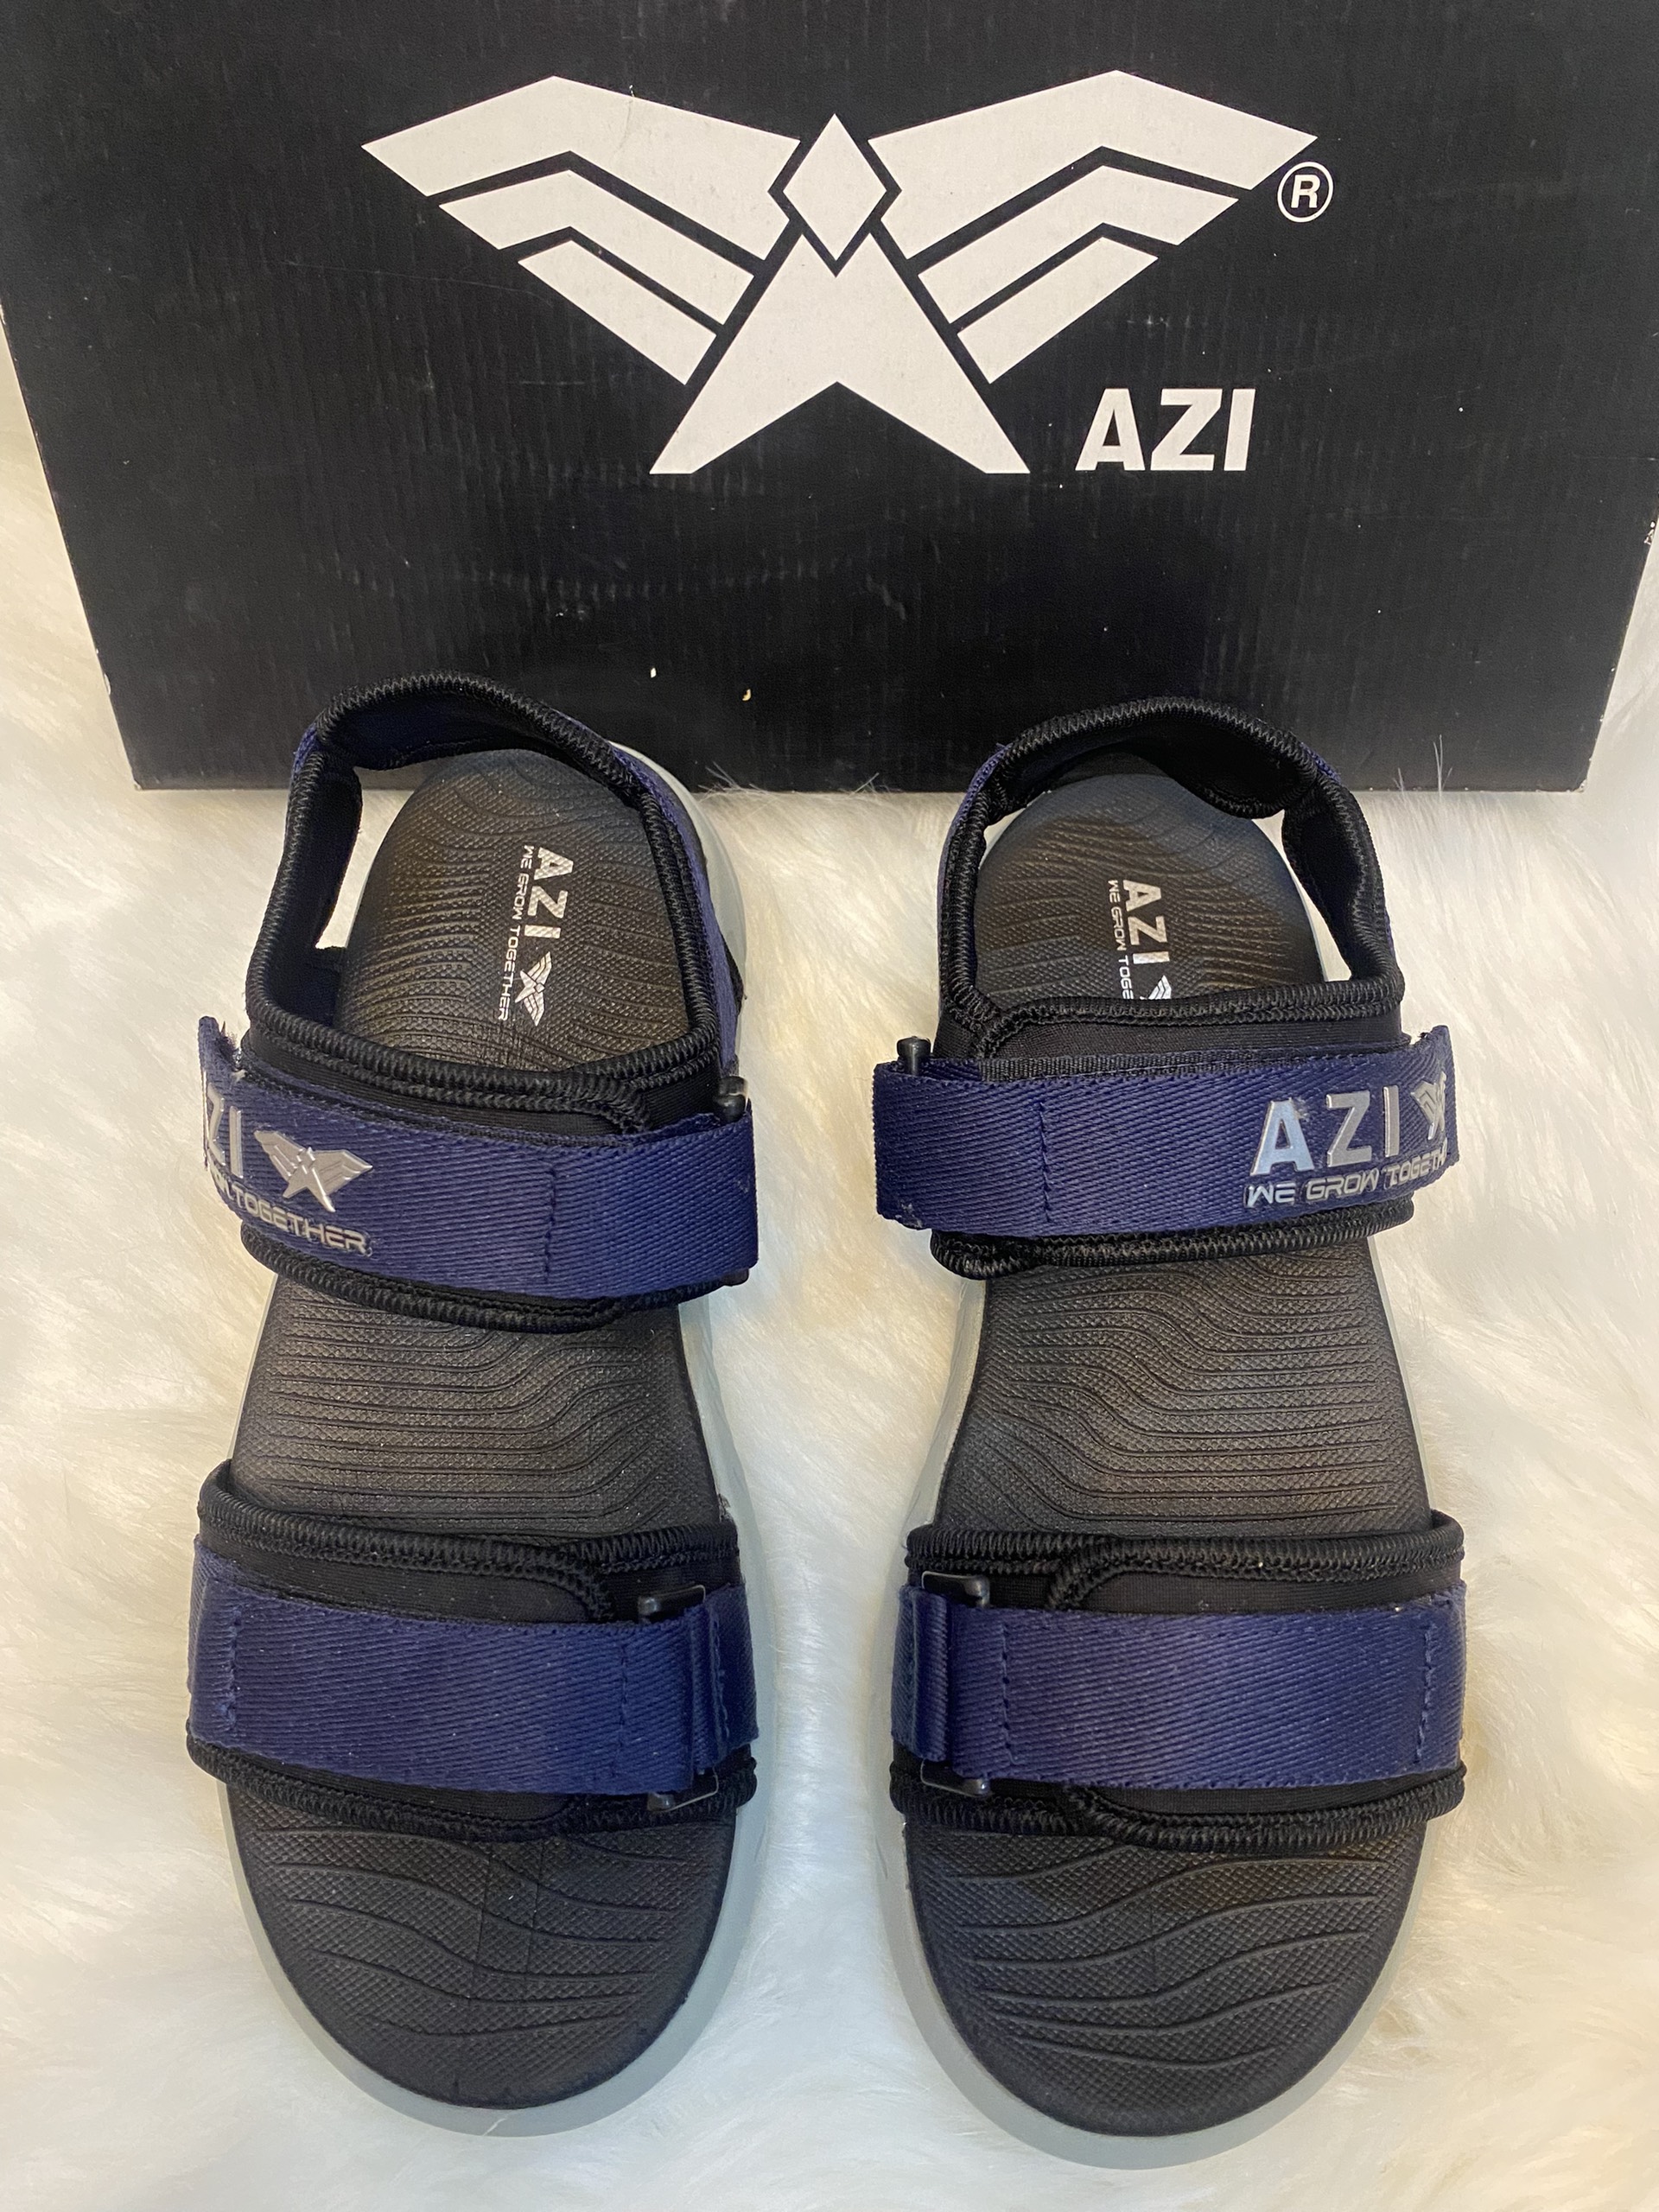 Giày sandal nam AZI AZI01  quai chéo đi chơi, đi học, du lịch